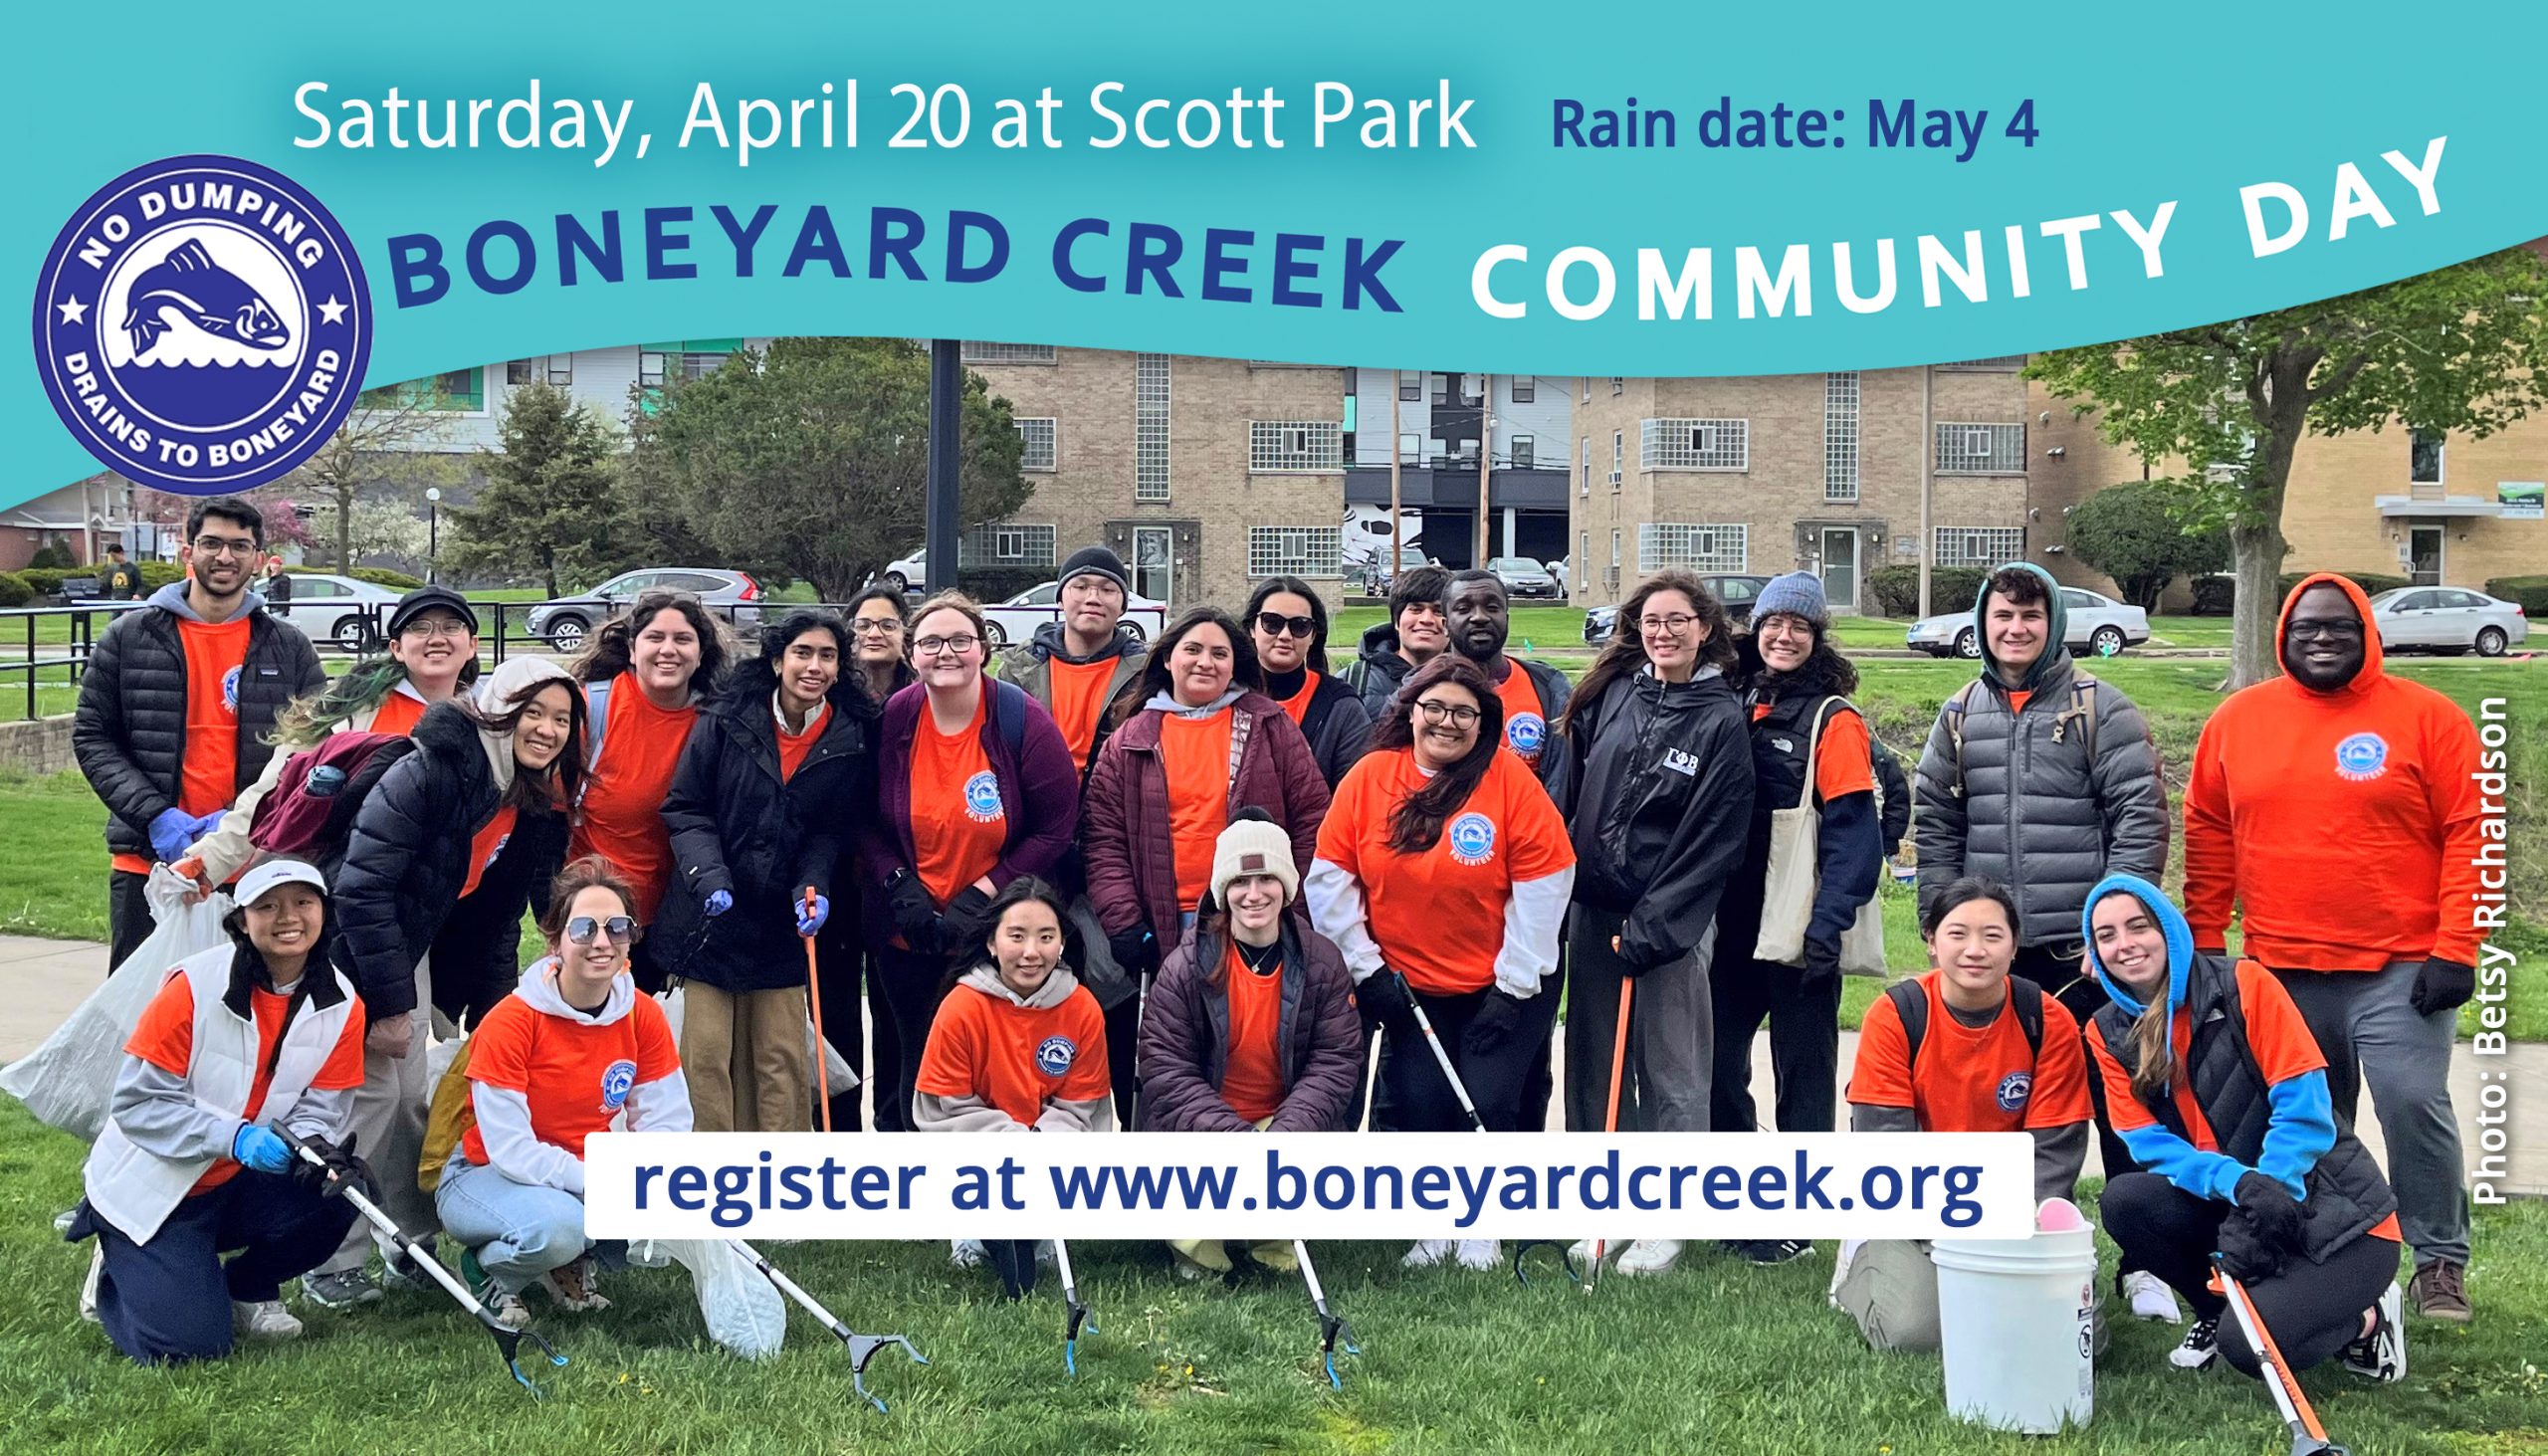 Boneyard Creek Community Day 2024. Saturday, April 20 at Scott Park. Register at www.boneyardcreek.org. Rain date: May 4